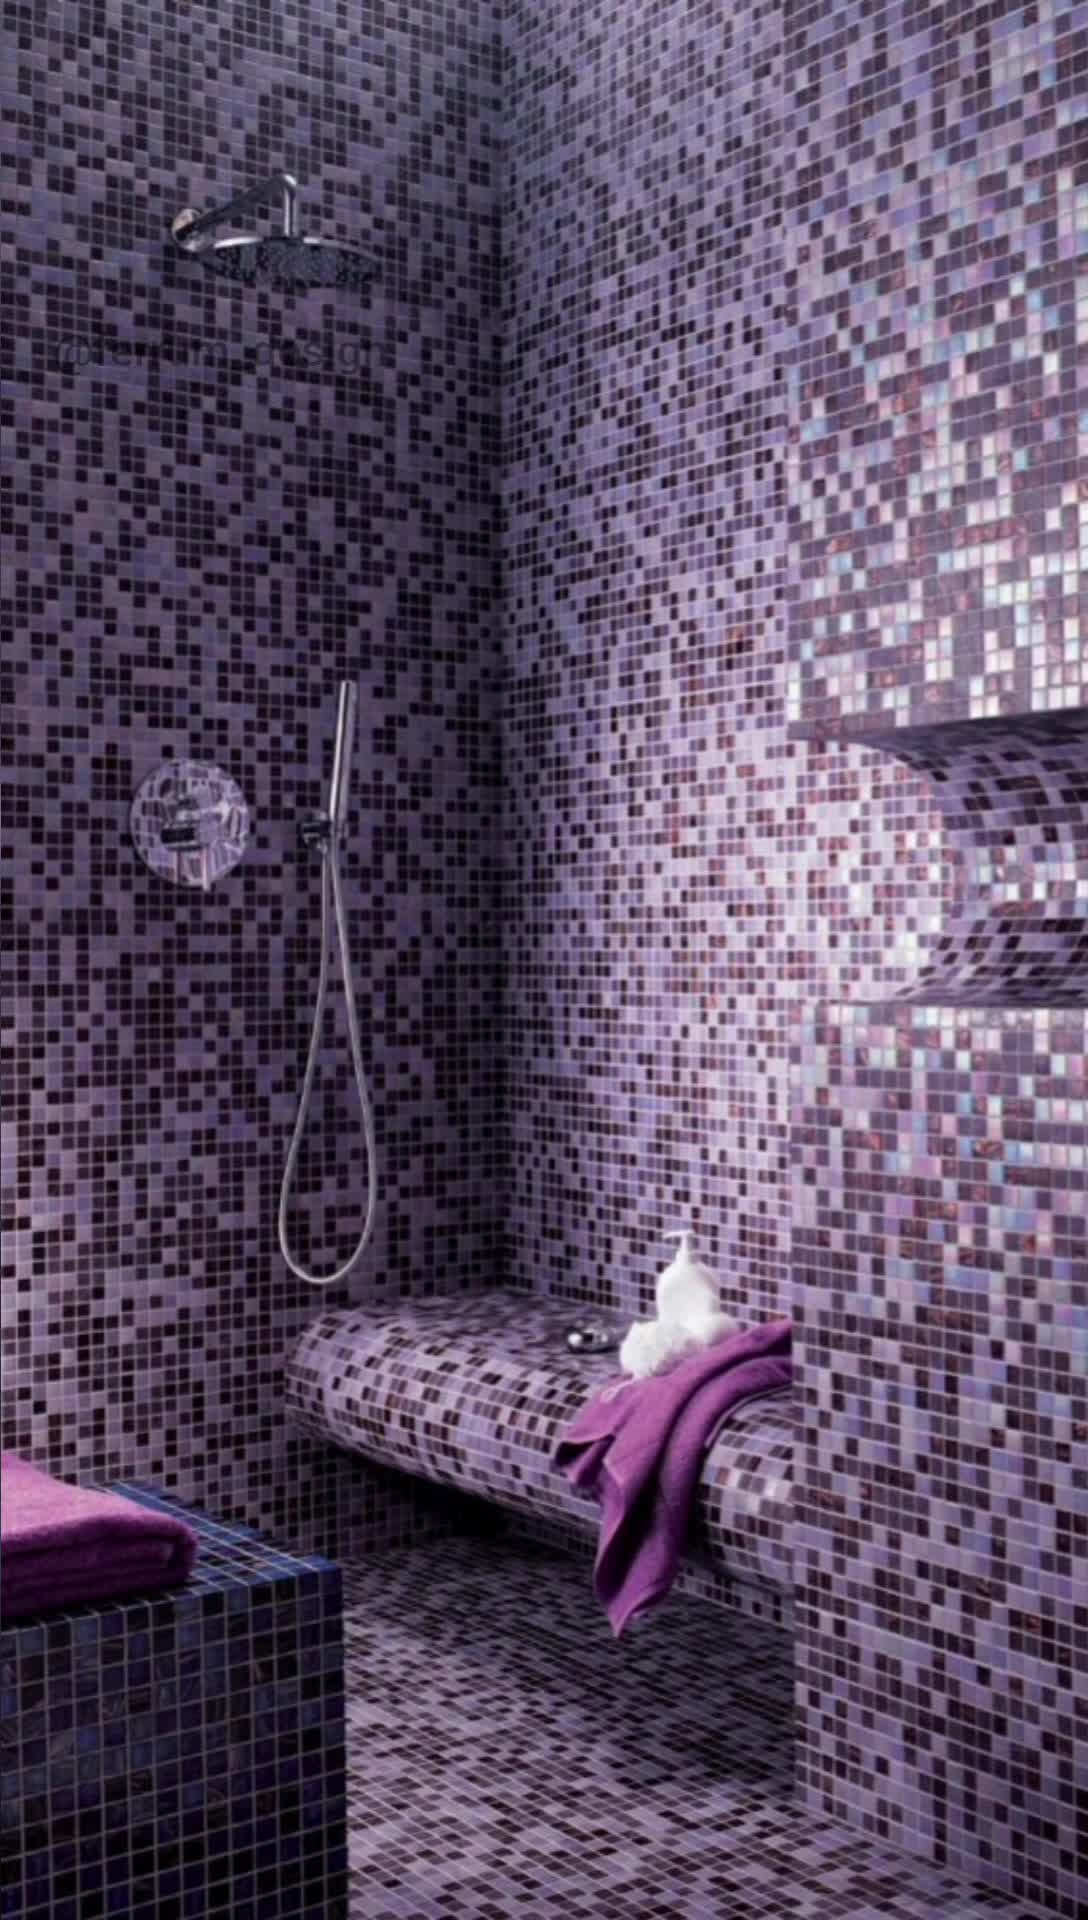 Купить мозаику для ванной plitka mosaica ru. Мозаика для ванной. Плитка мозаика для ванной комнаты. Мозаика в ванной комнате. Мелкая плитка для ванной.